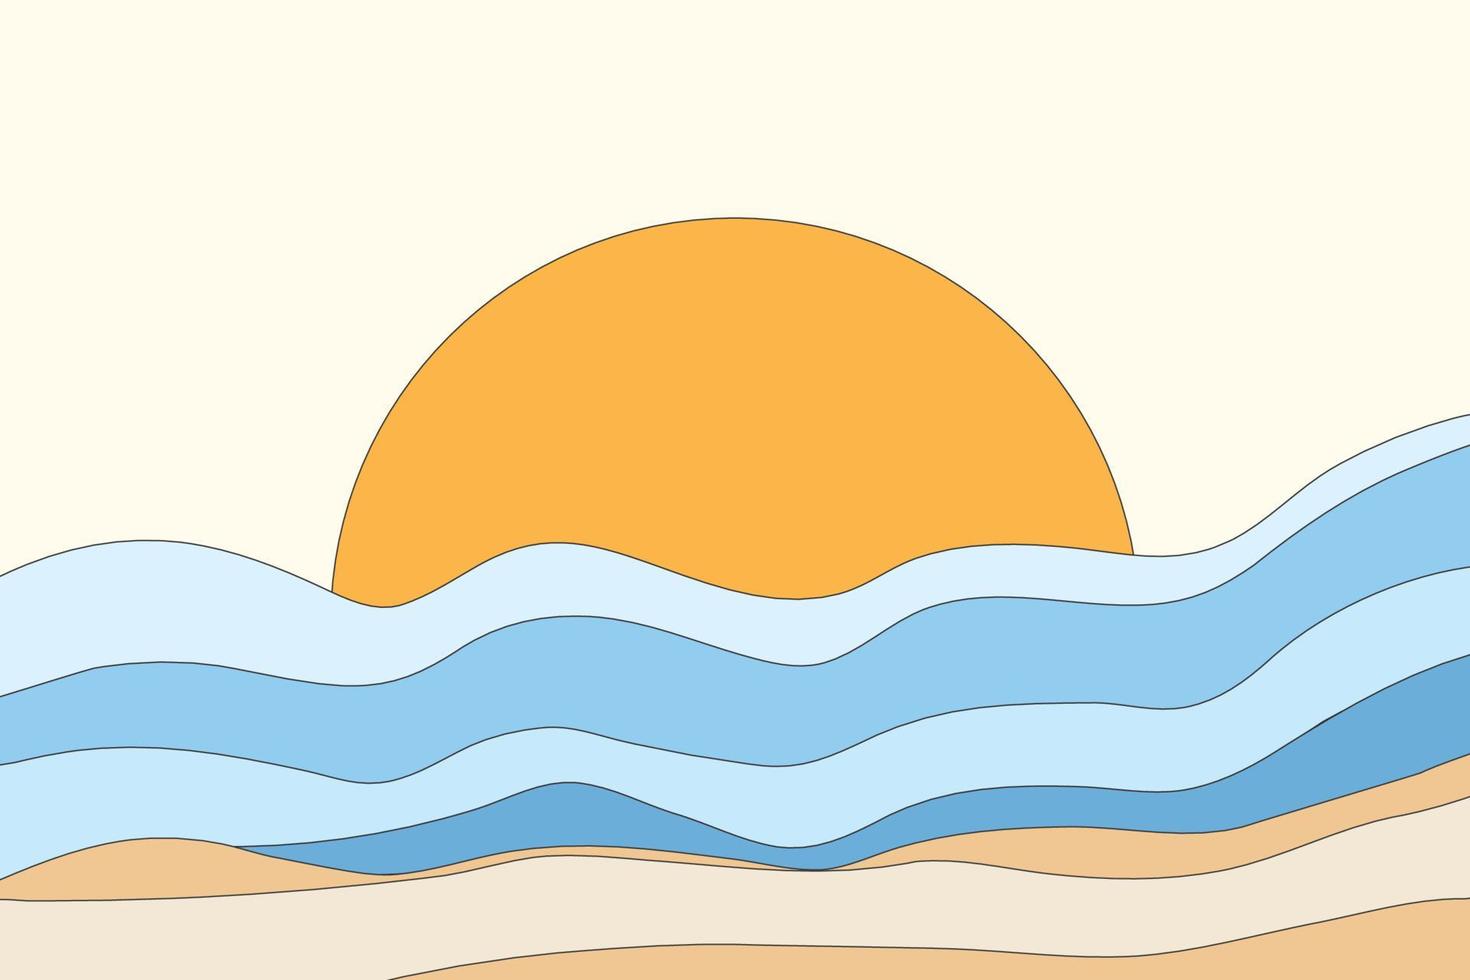 el paisaje del fondo de la estructura de las olas del mar. el círculo naranja parece un fondo de pantalla solar en un estilo abstracto vector